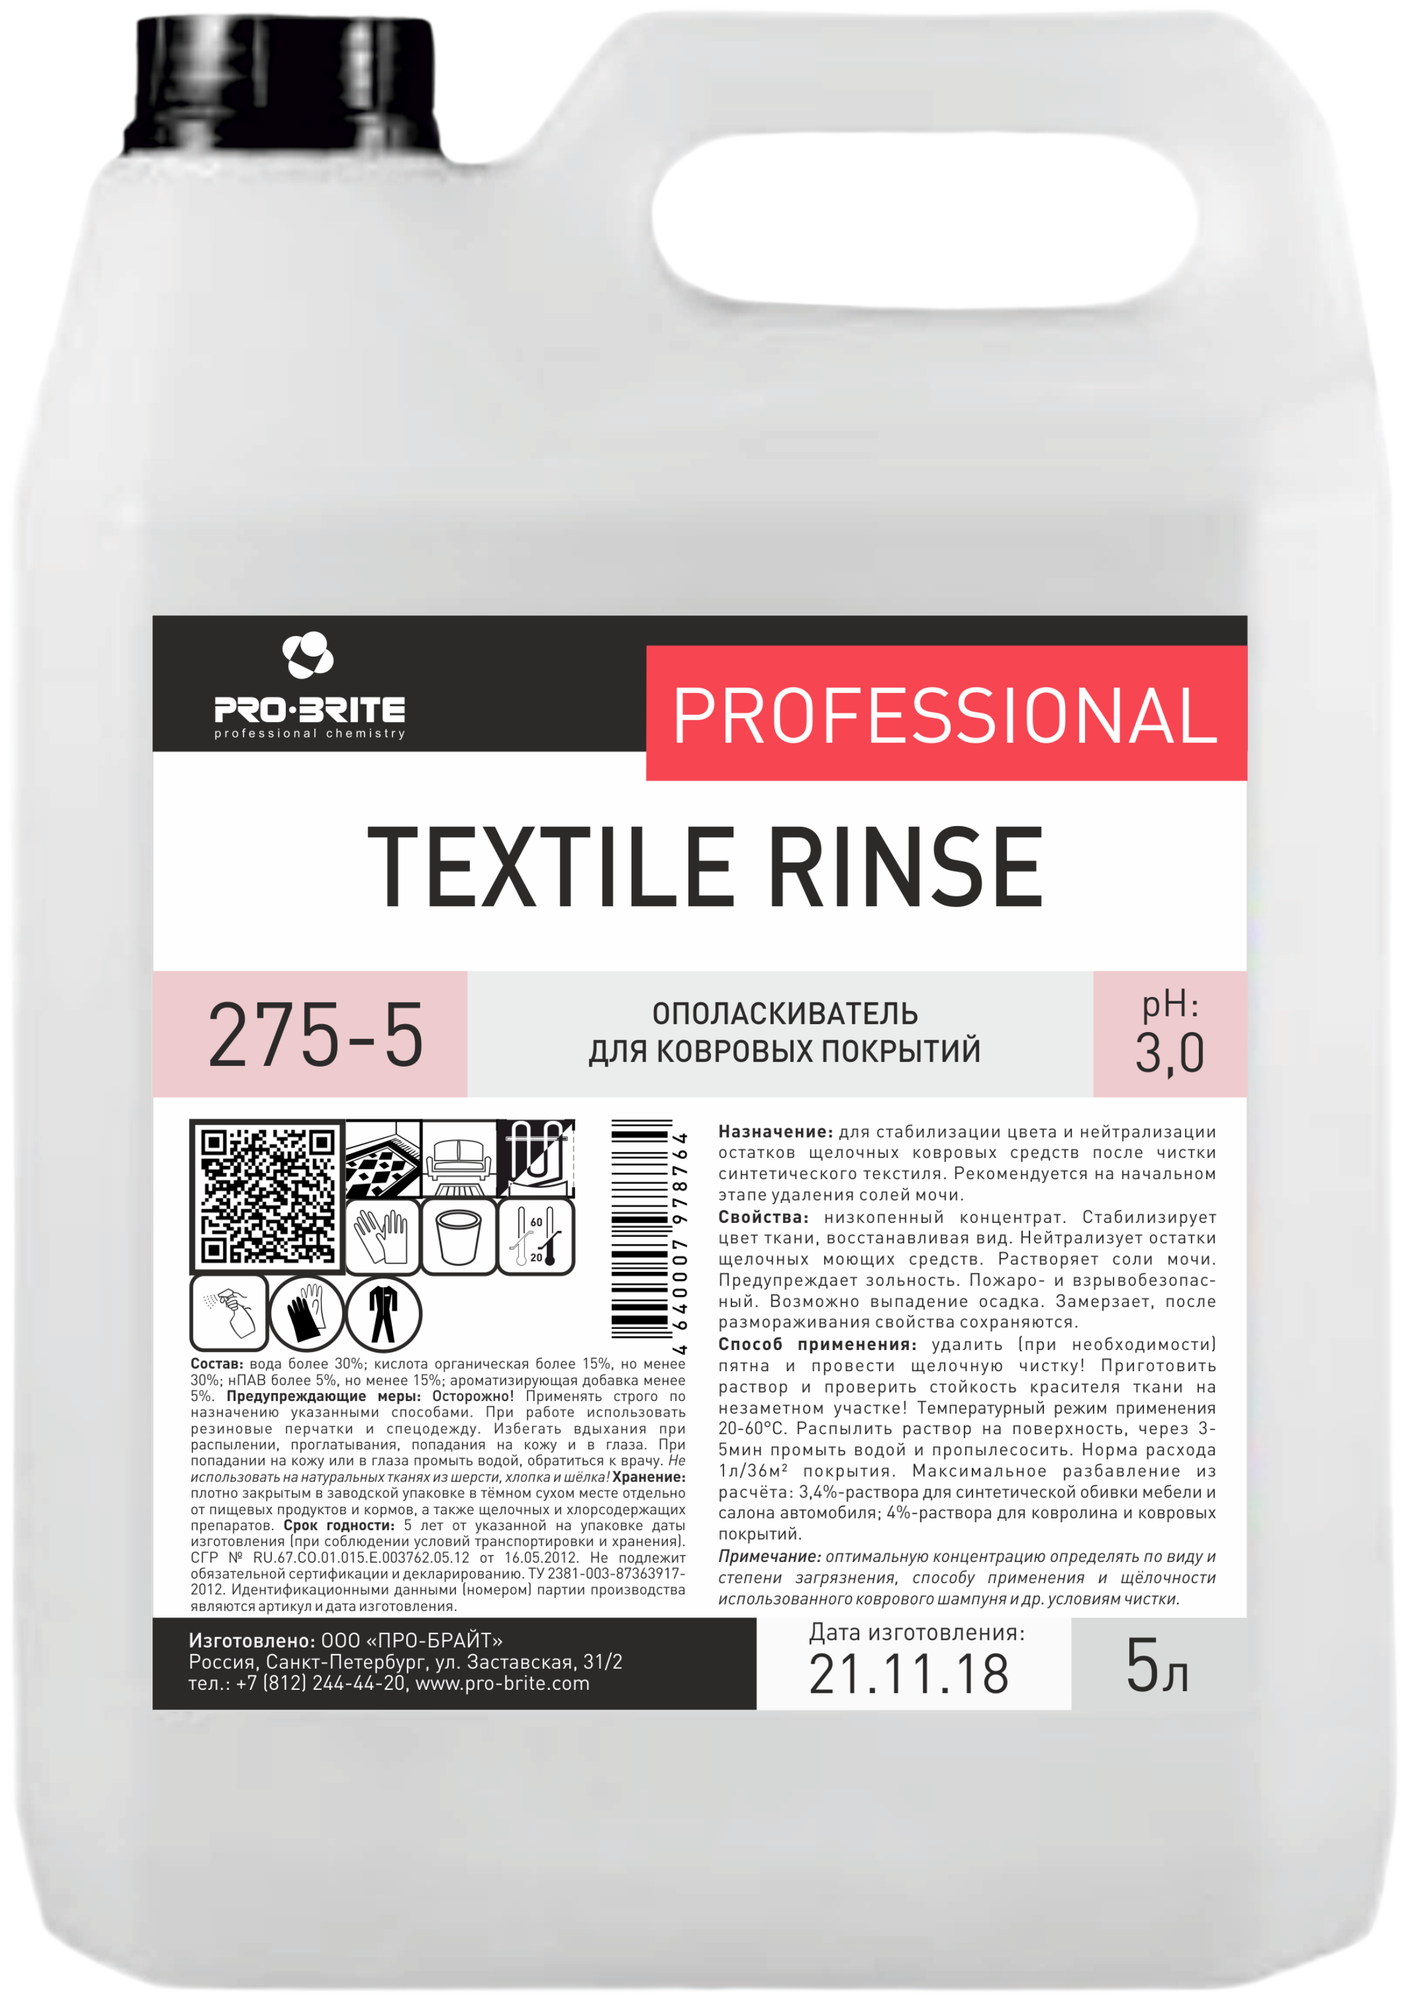 Ополаскиватель для ковровых покрытий Textile Rinse Pro-Brite